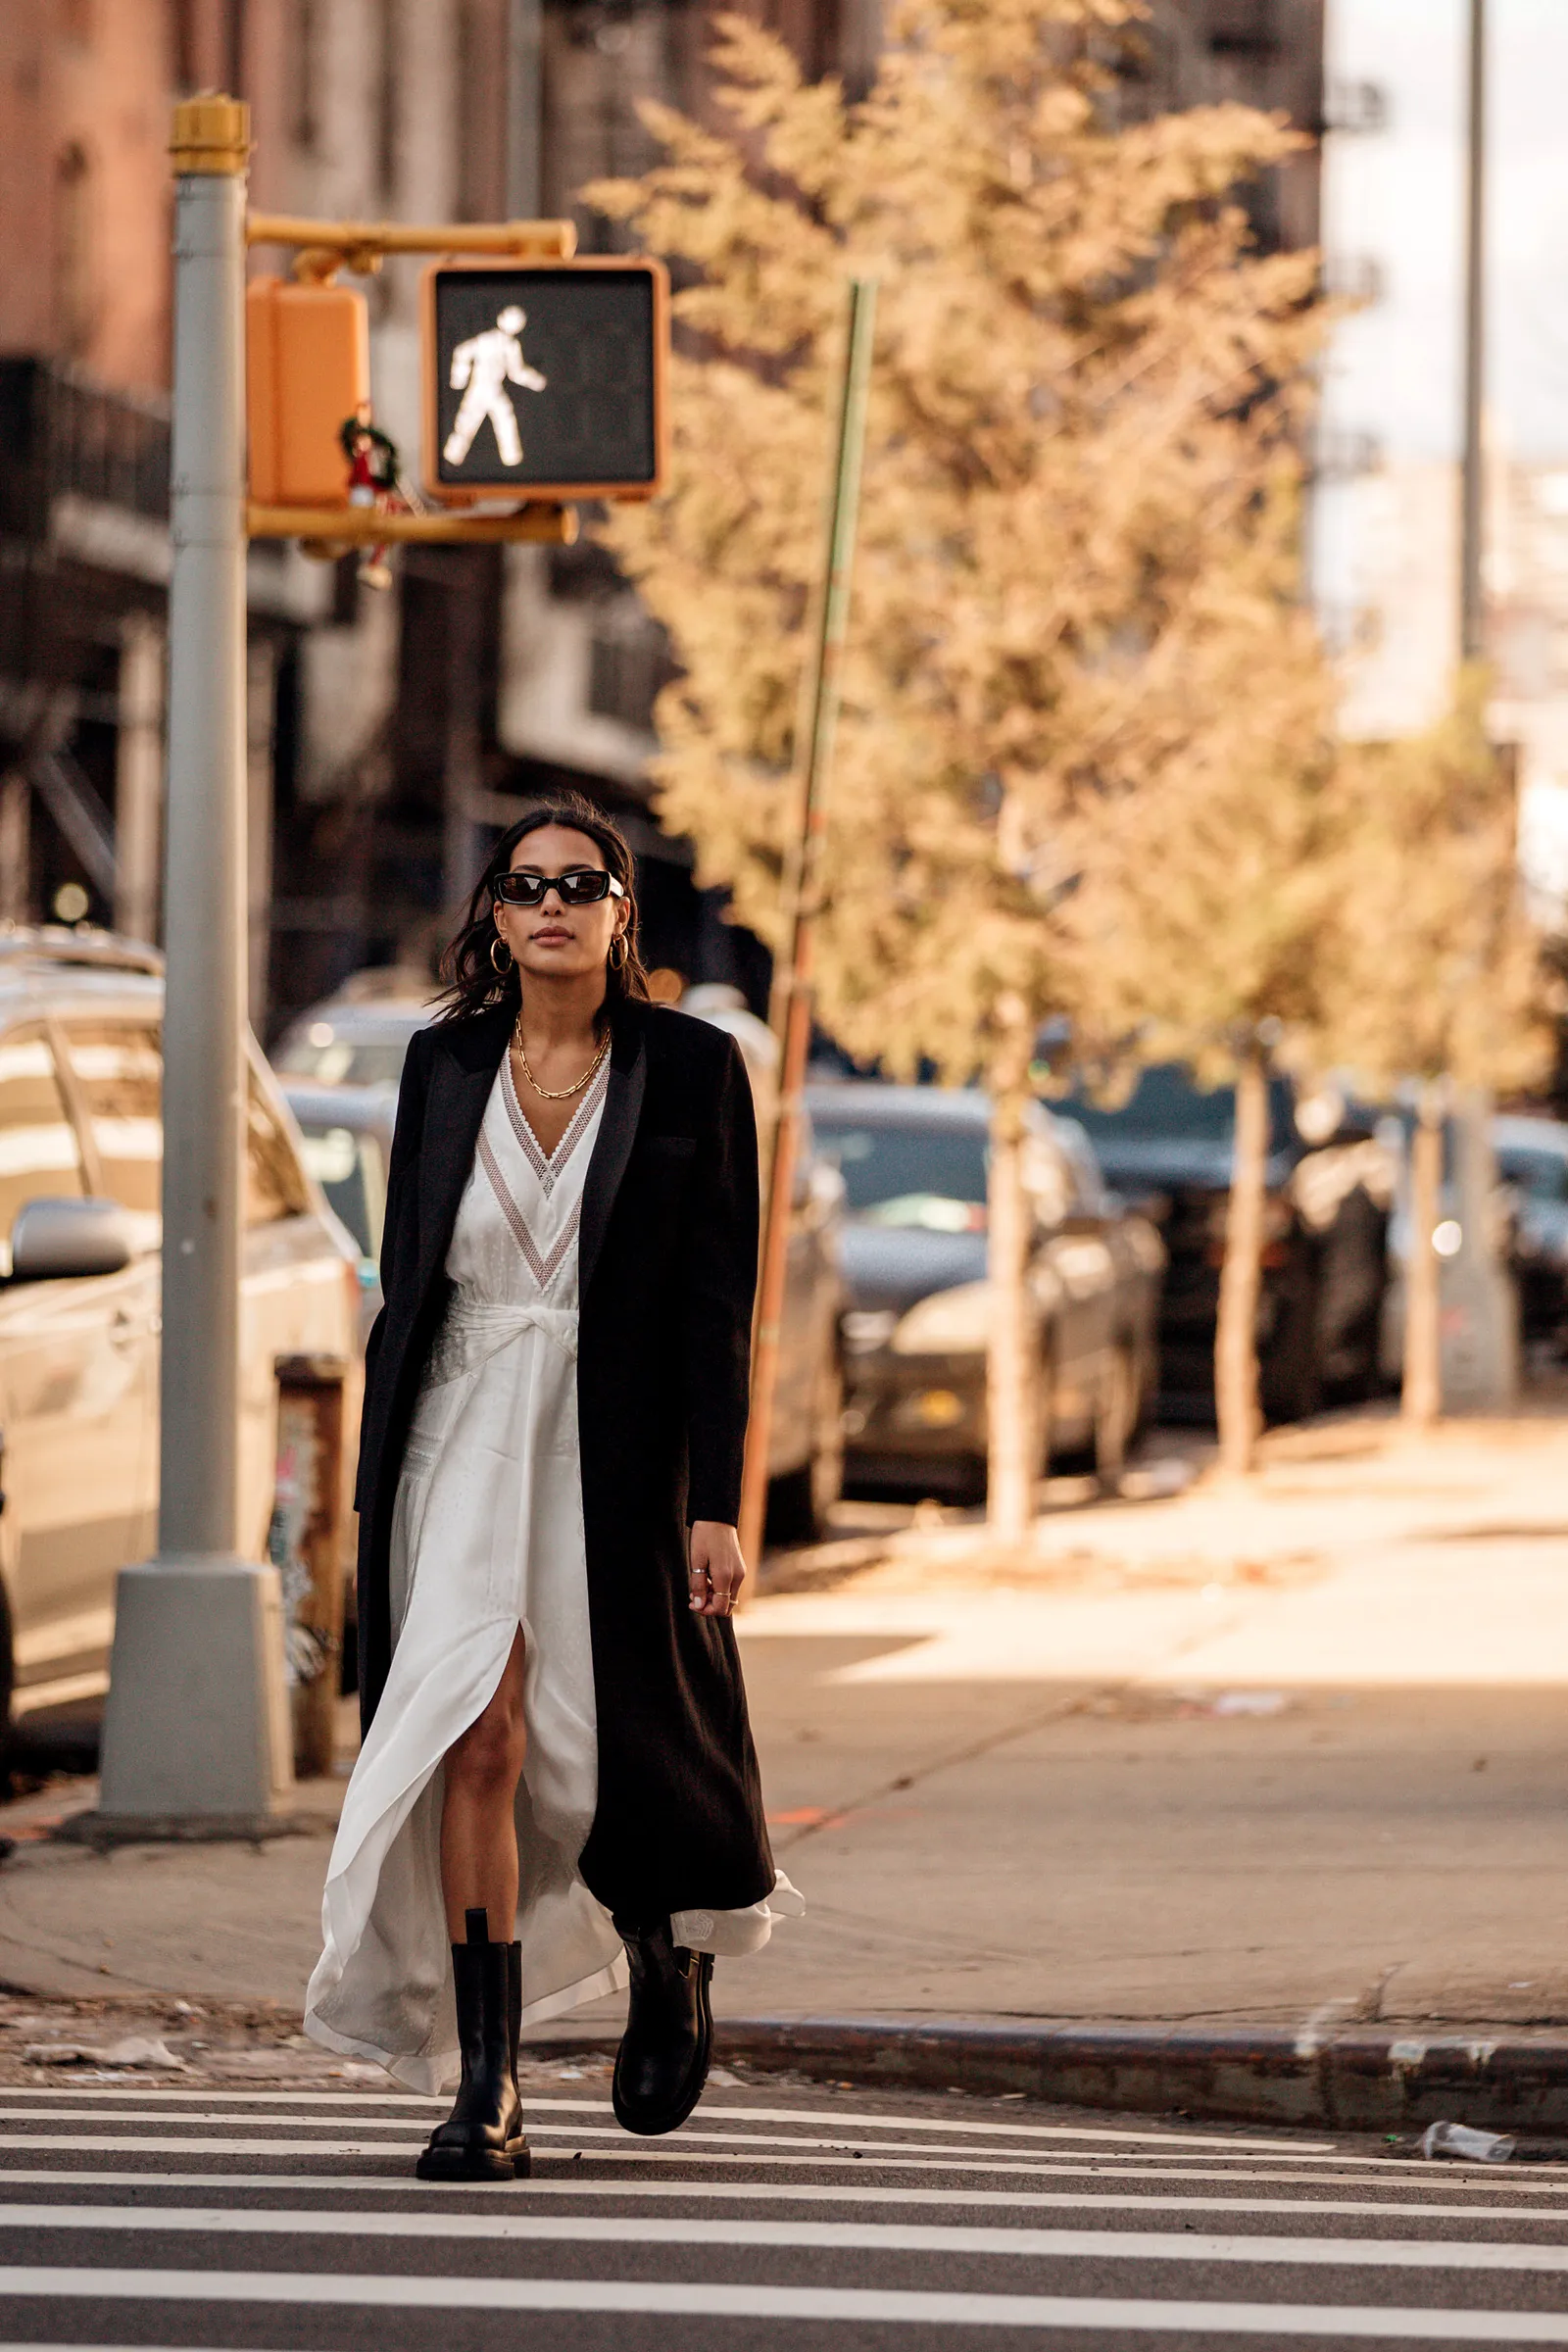 Sukienka boho z prześwitującymi detalami i buty z traperową podeszwą są w tym sezonie hitem ulicznego stylu. (Fot. Getty Images)